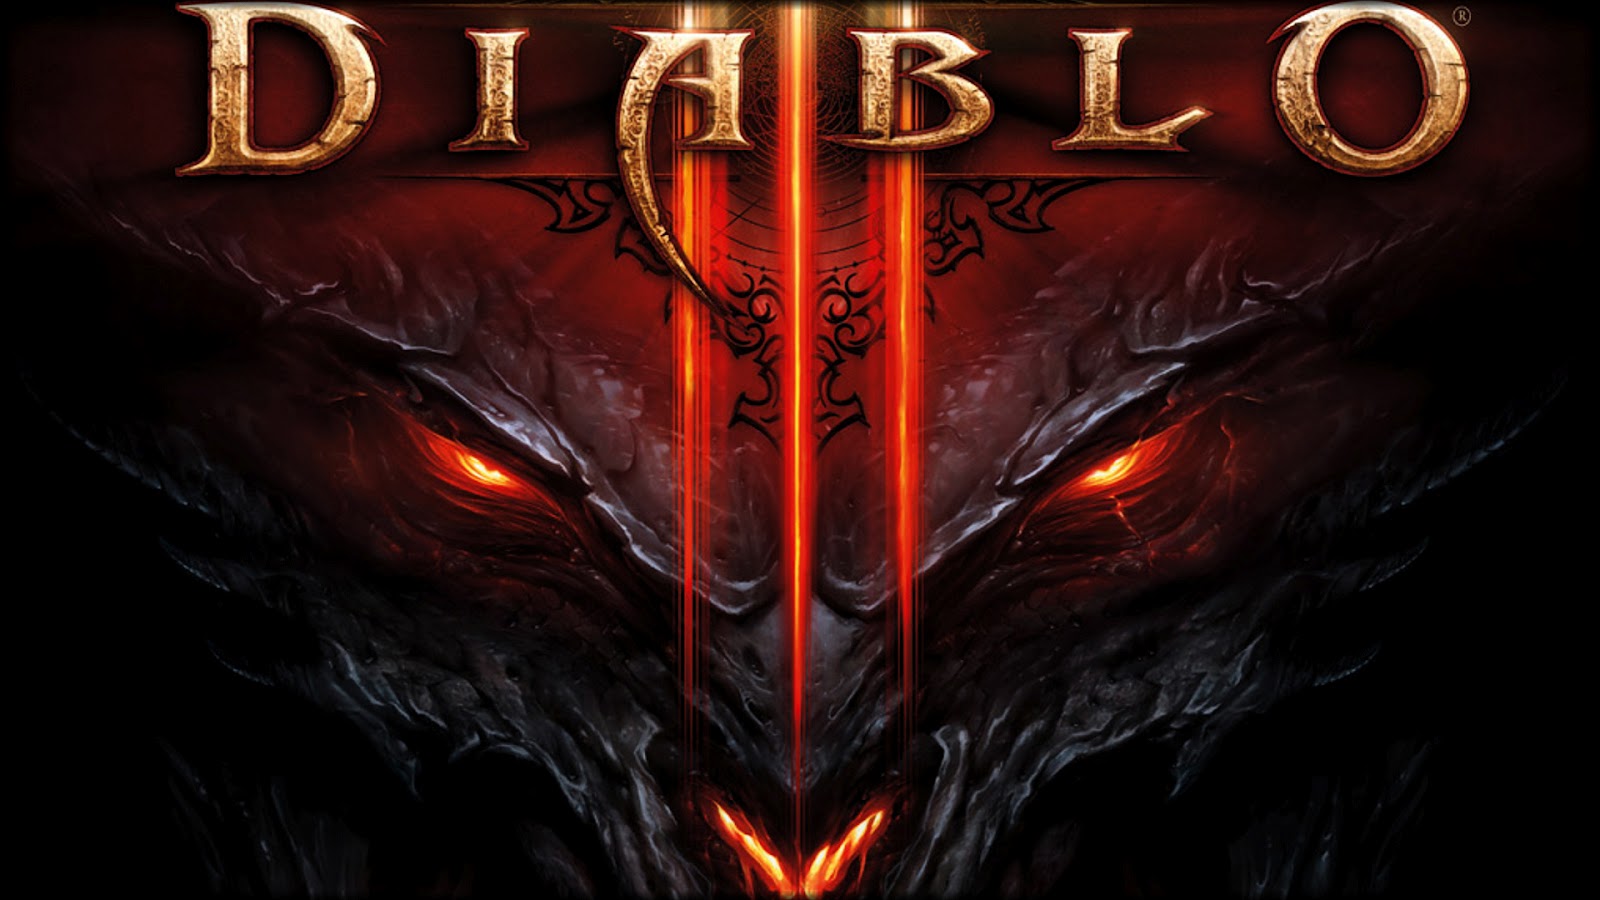 Wallpaper HD De Juegos Diablo Blizzard Entertainment